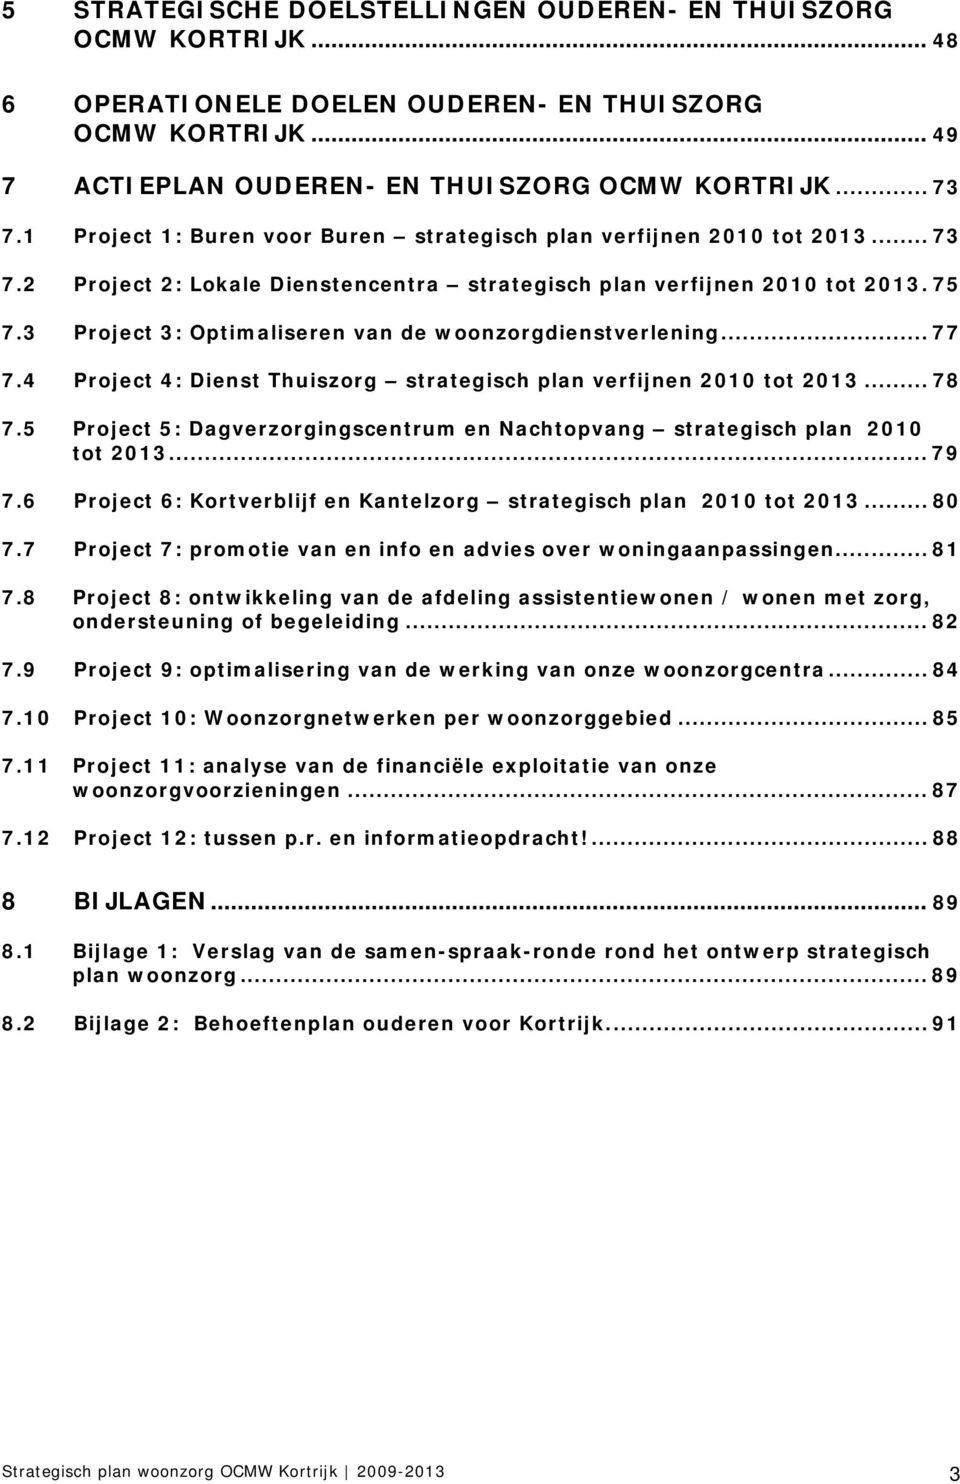 3 Project 3: Optimaliseren van de woonzorgdienstverlening... 77 7.4 Project 4: Dienst Thuiszorg strategisch plan verfijnen 2010 tot 2013... 78 7.